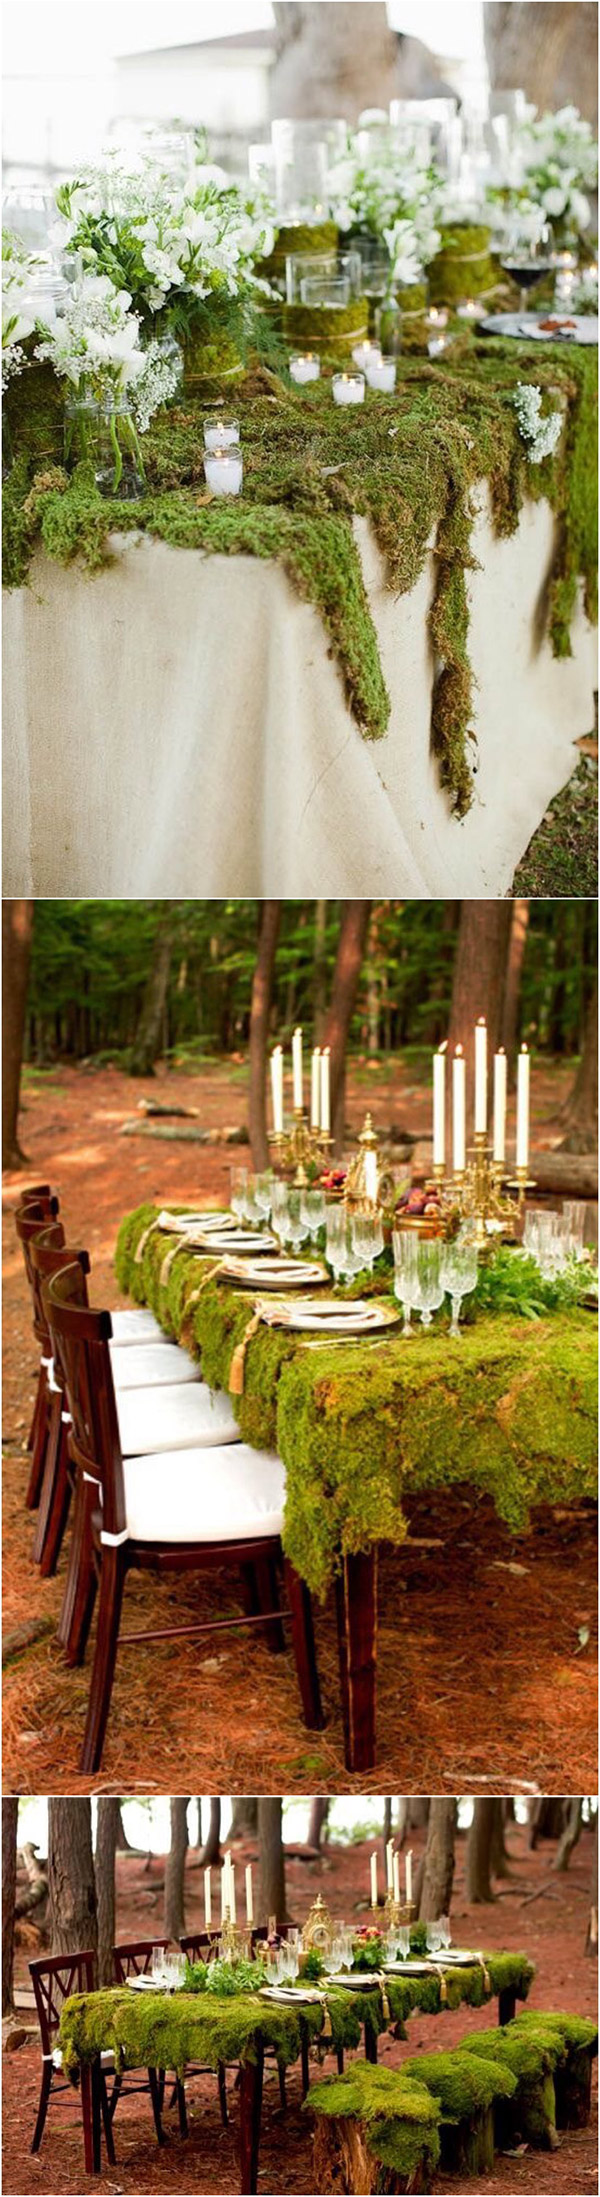 Enchanted Forest Fairytale Wedding In Shades Of Autumn Enchanted Wedding Terrarium Wedding Fairy Wedding